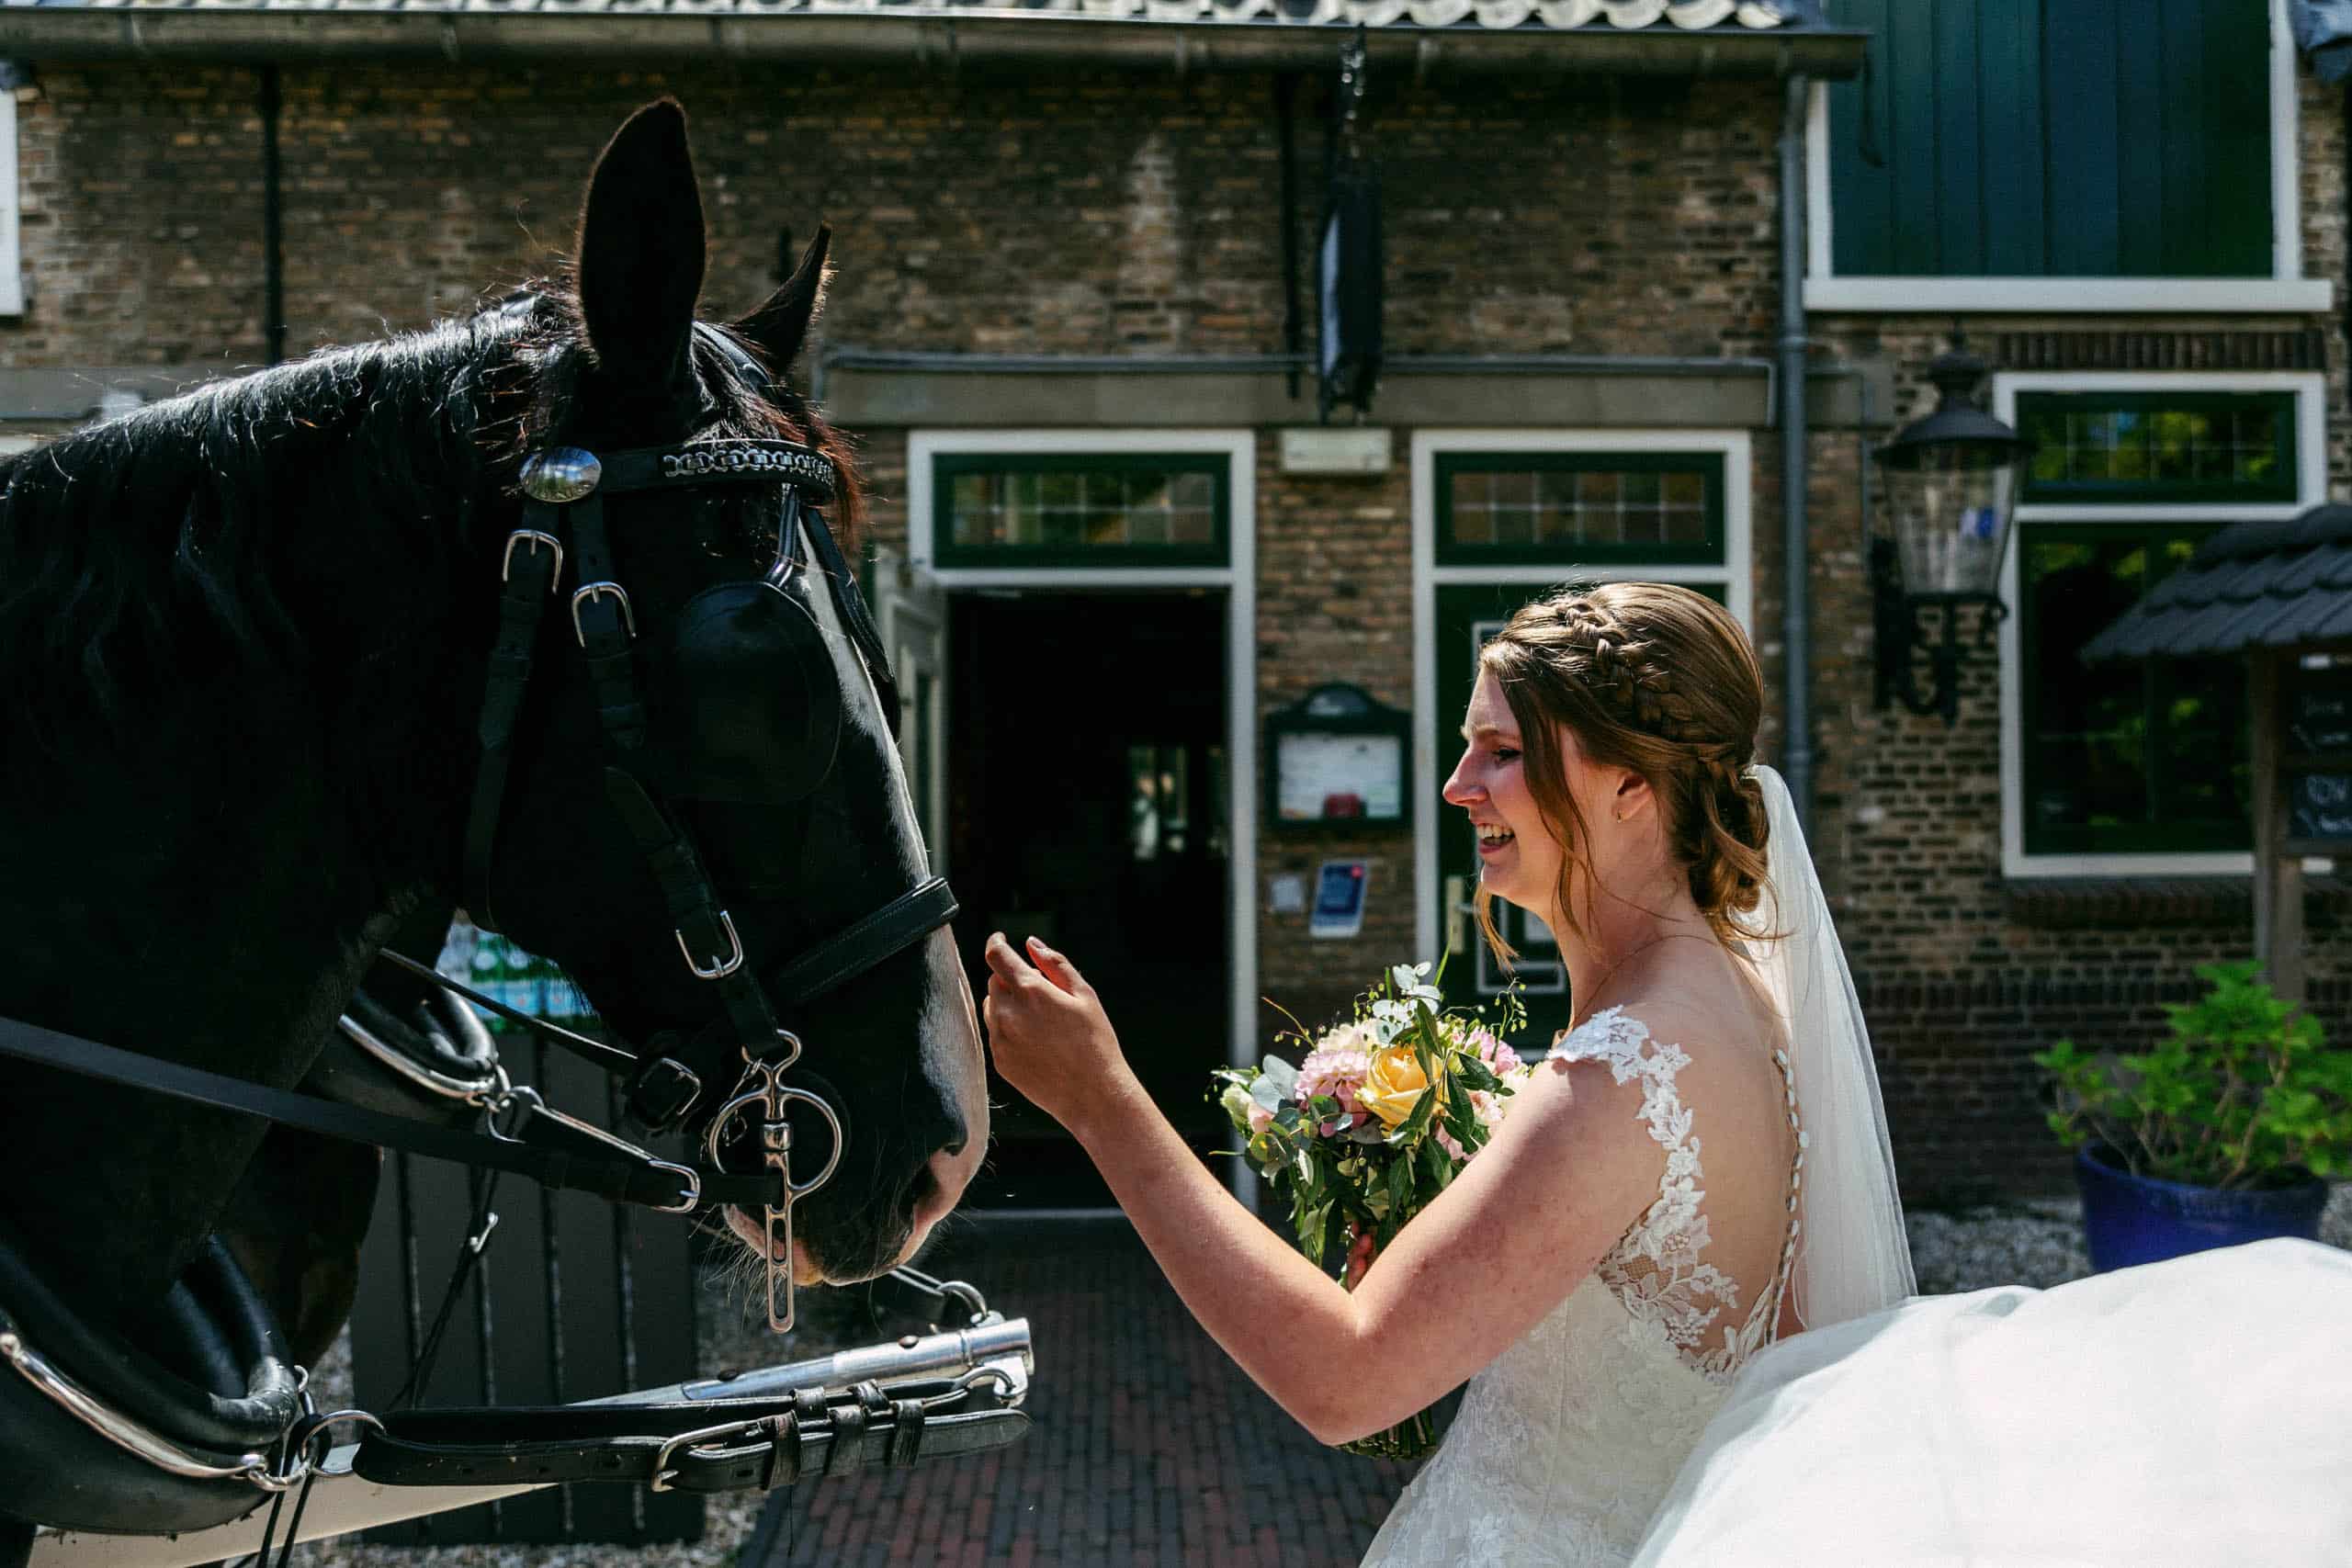 Een bruid aait een paard voor een pand tijdens een dierenbruiloft.